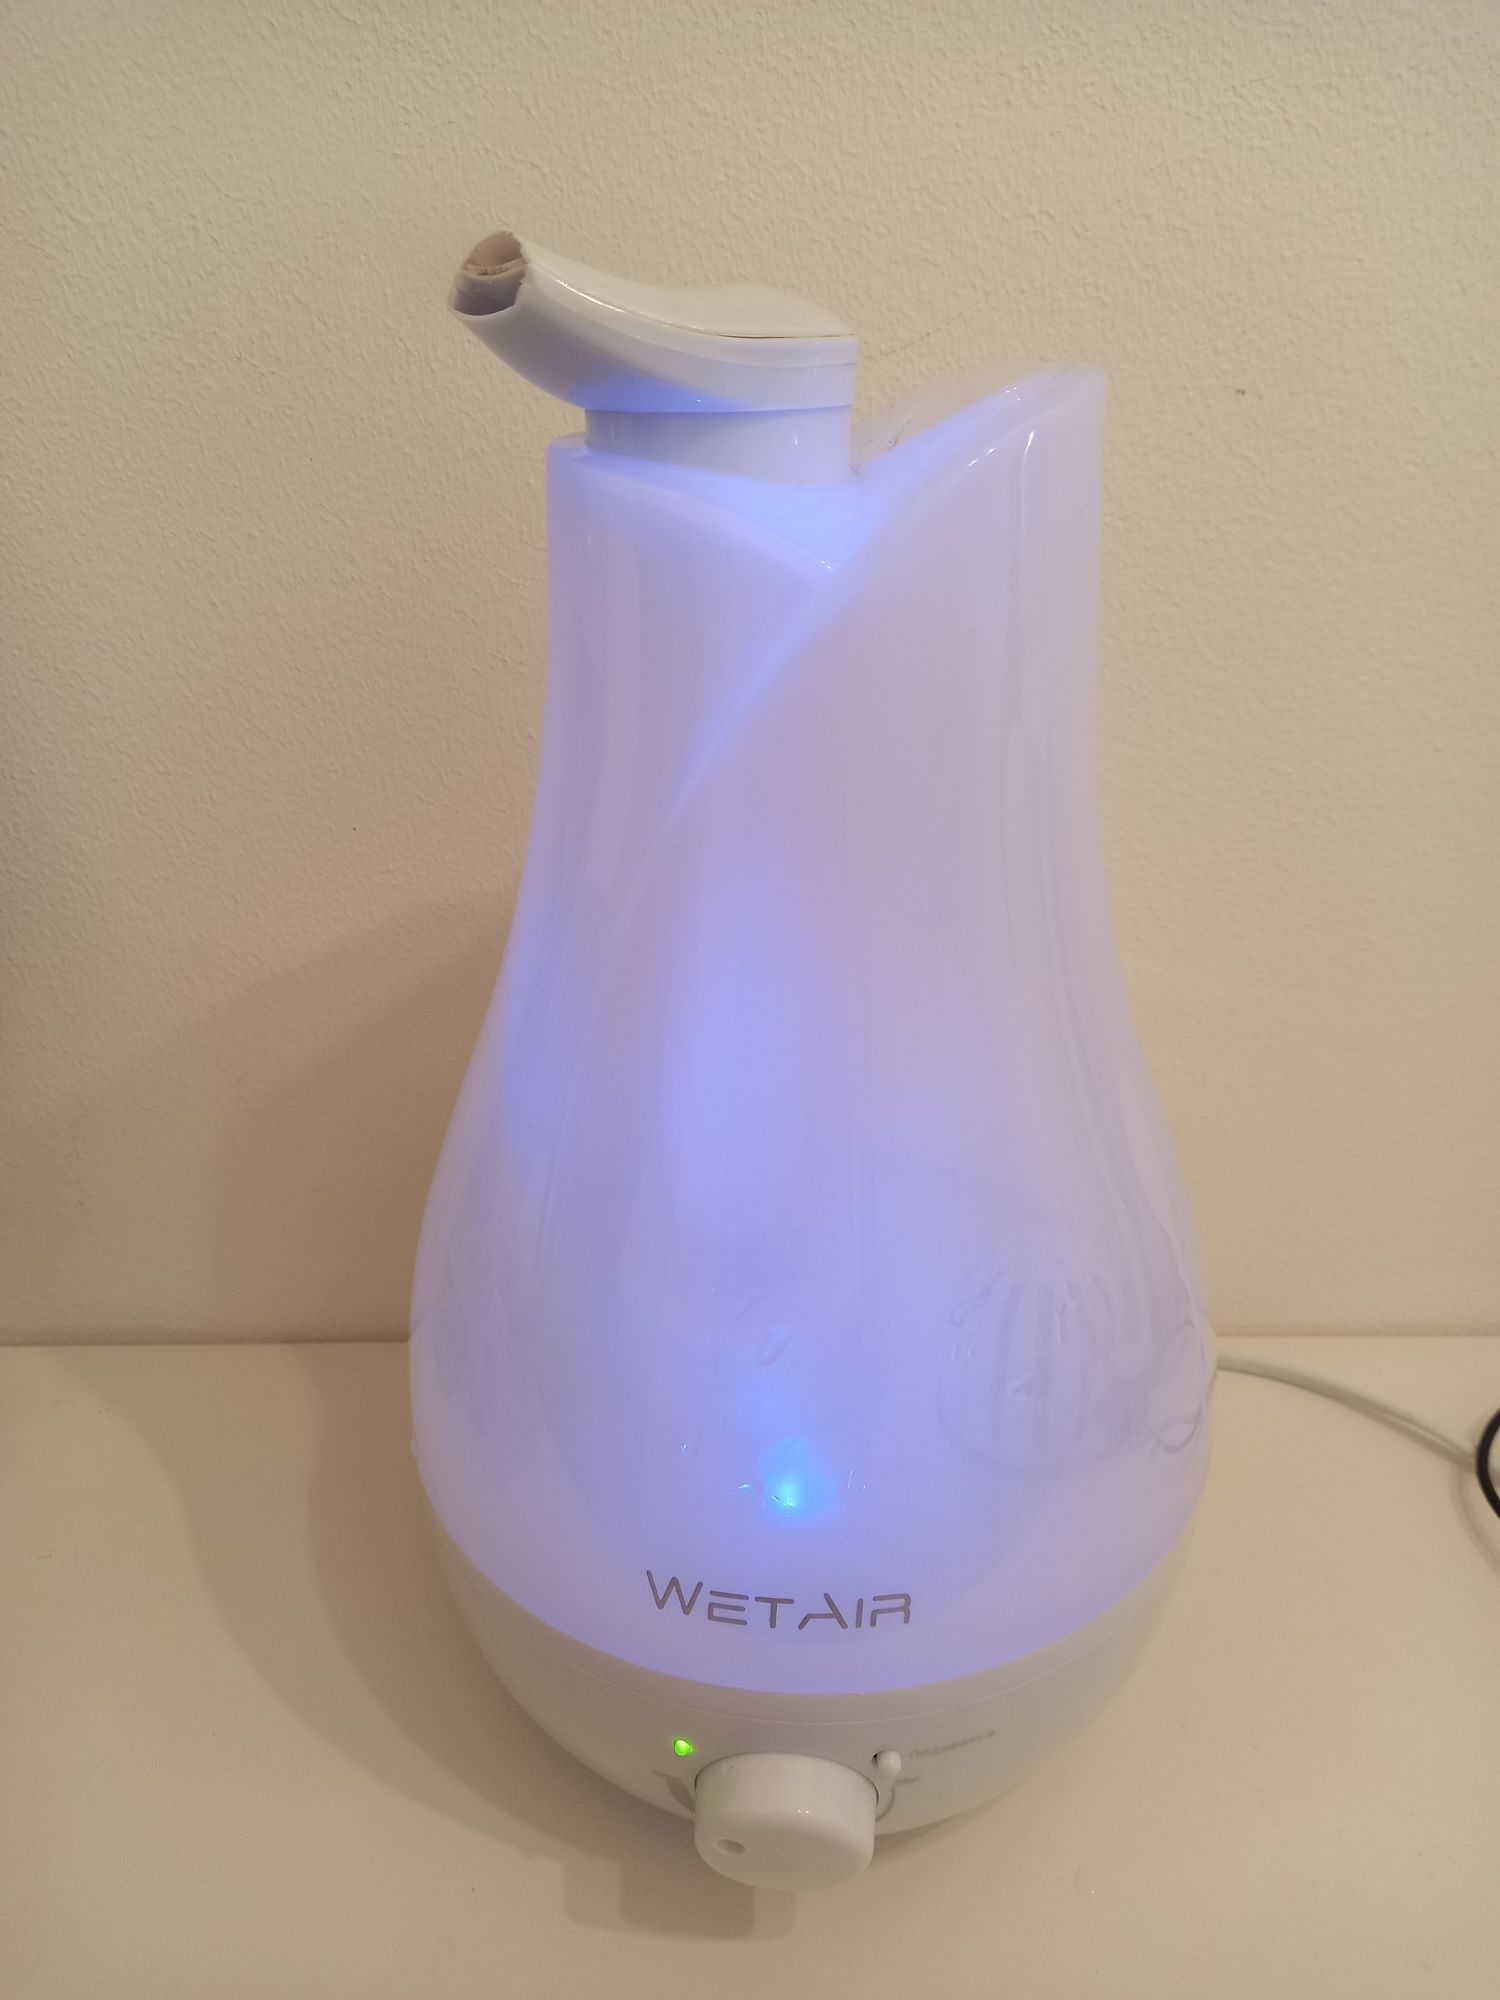 Увлажнитель воздуха WetAir с подсветкой (ночник)